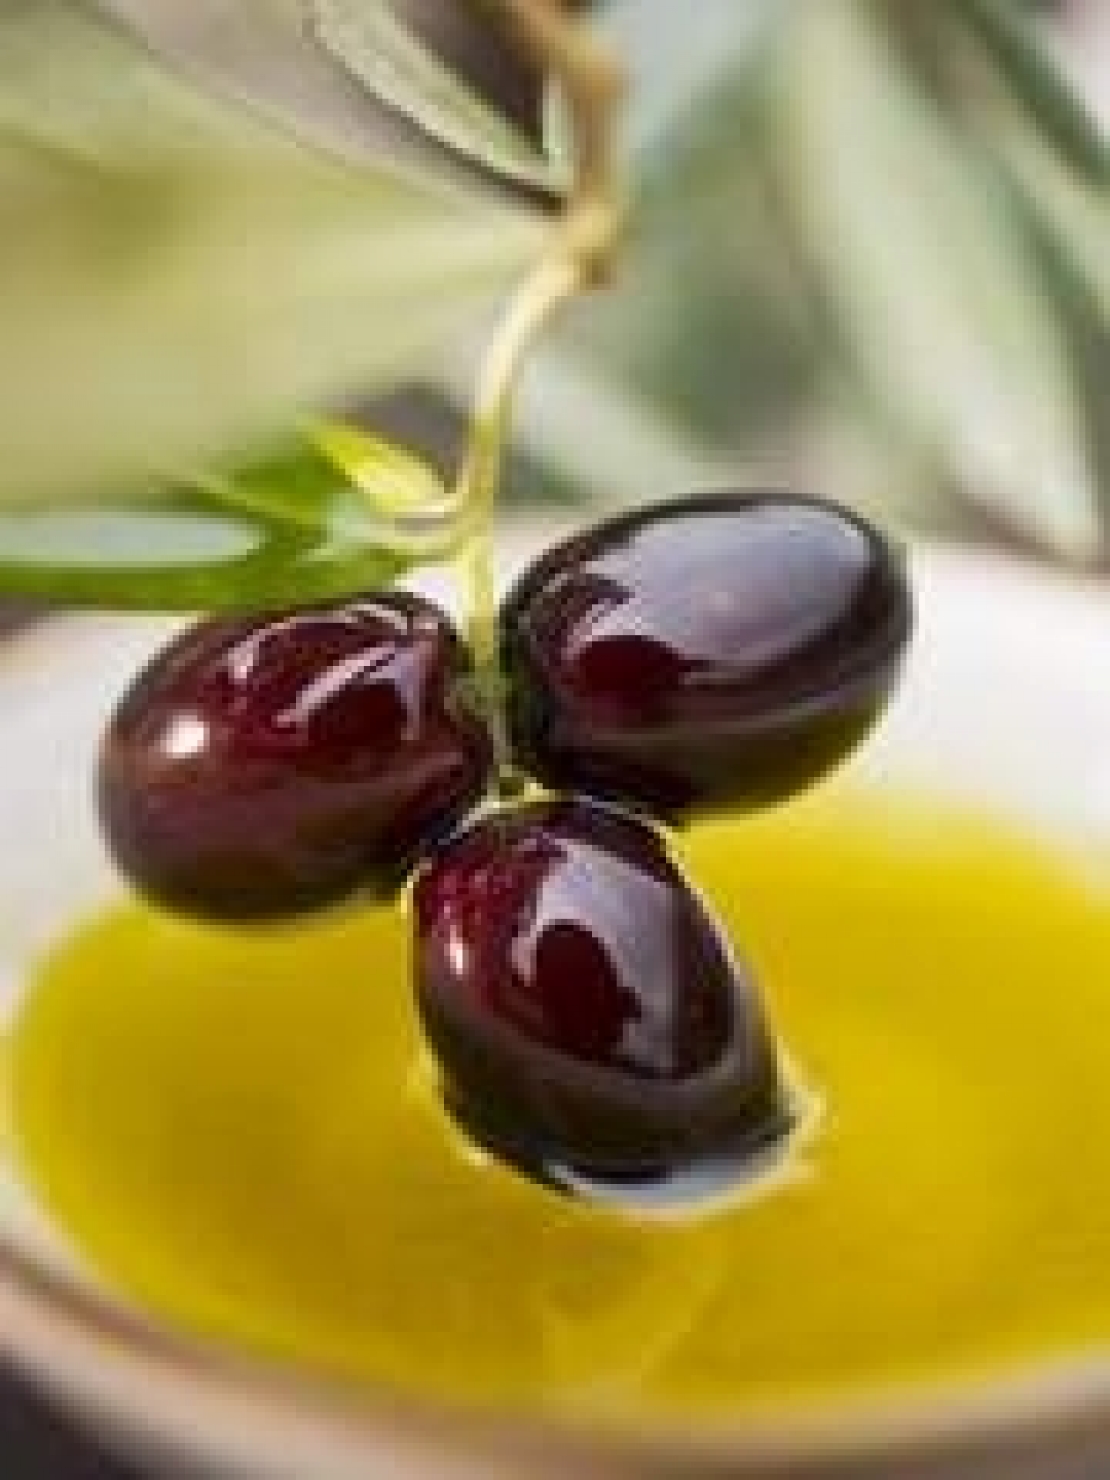 L'olio extra vergine d'oliva, questo sconosciuto, soprattutto tra i contadini veraci